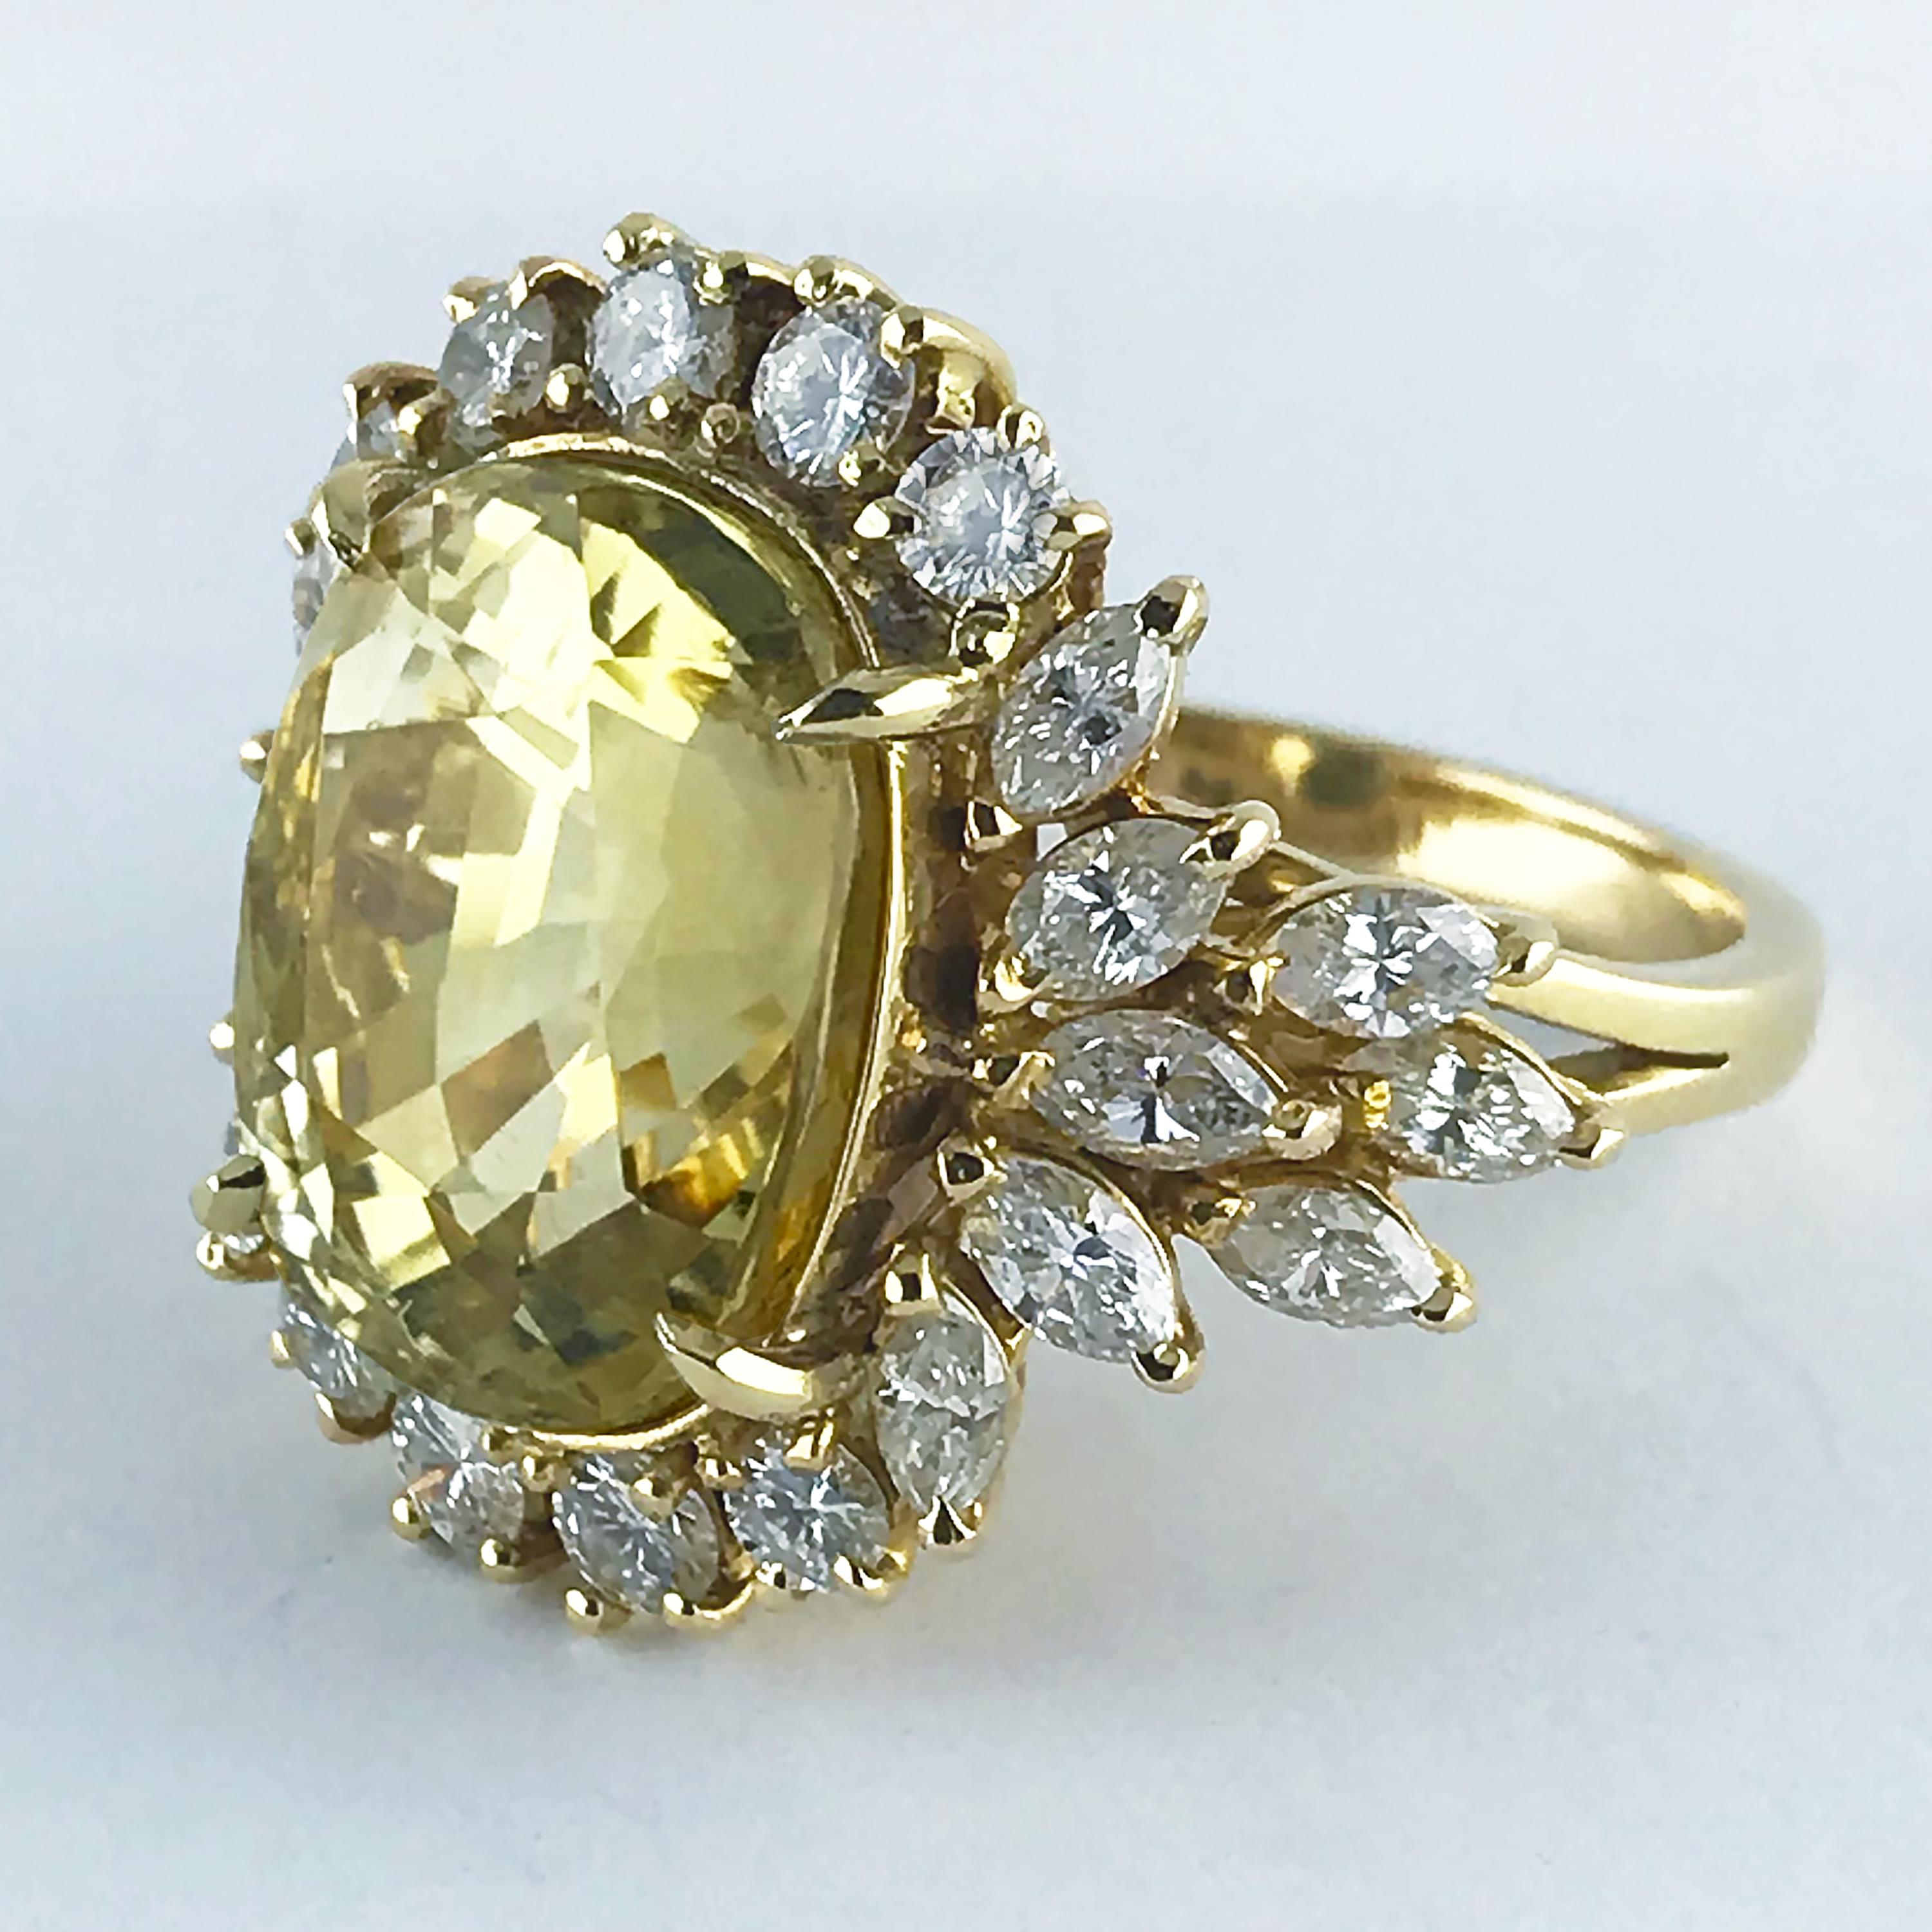 Vintage-Ring mit einem großen, seltenen, natürlichen, unbehandelten, gelben Saphir, handgefertigt in England, um 1960.

Gelber Saphir aus Zentral-Ceylon (Sri Lanka), Kissenschliff, Gewicht 16,39ct, zertifiziert, natürliche, unbehandelte Farbe. 

Der